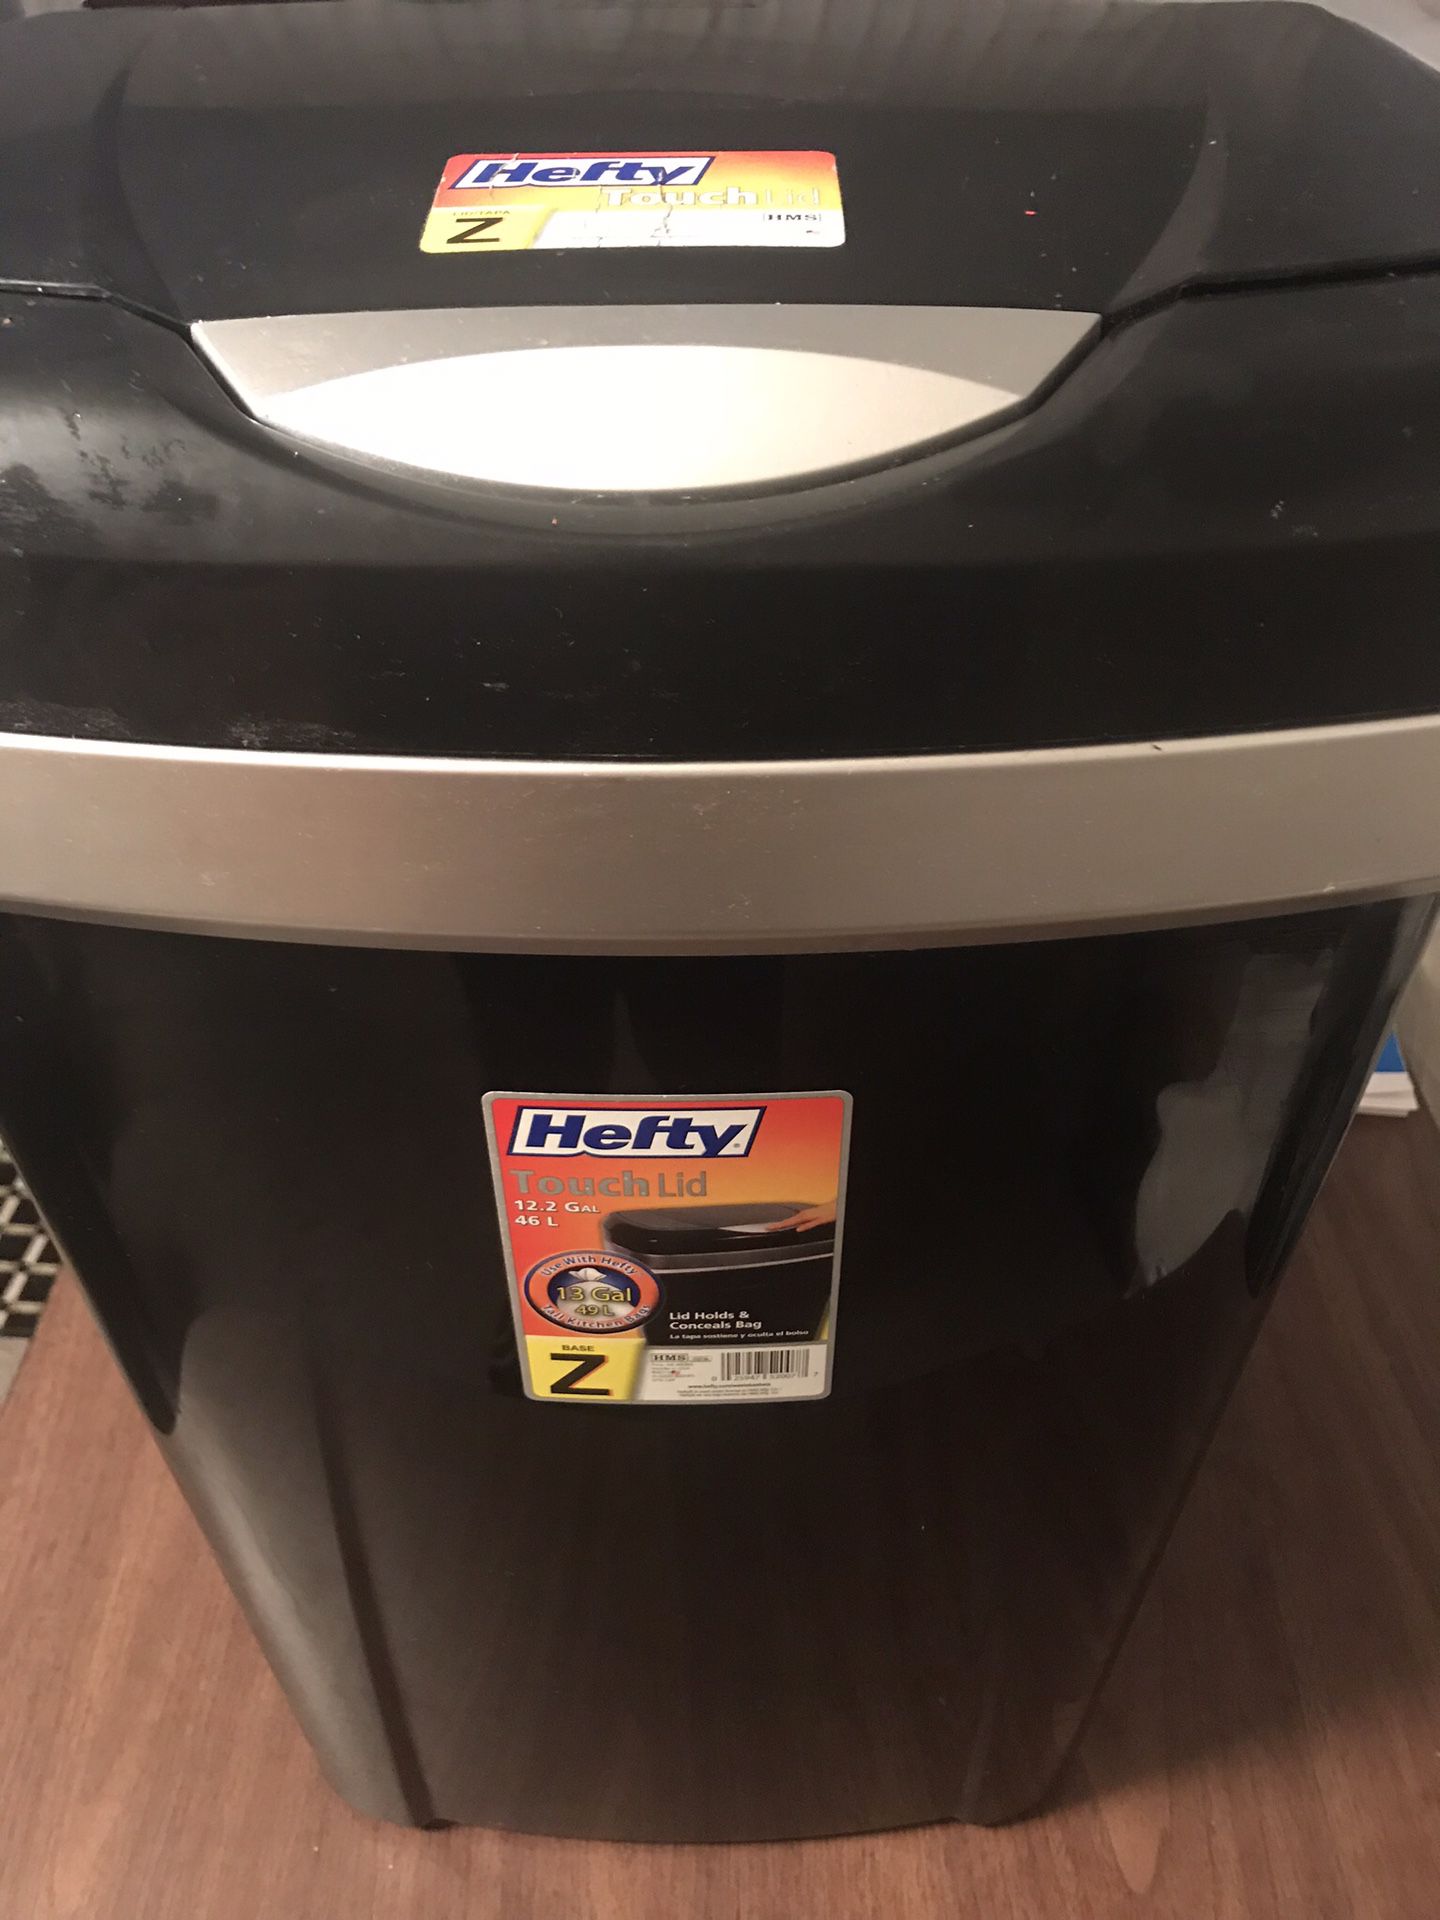 Hefty trash can